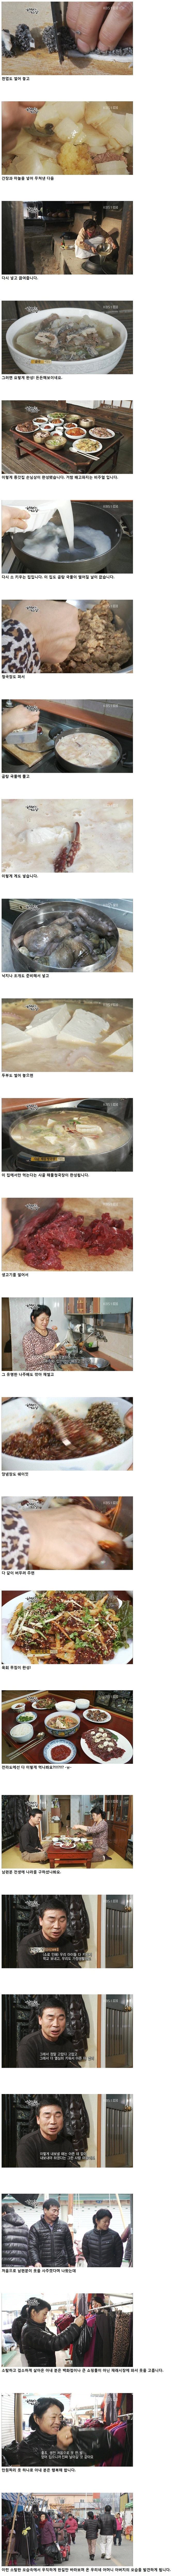 한국인의 밥상 - 나주곰탕 (스압)